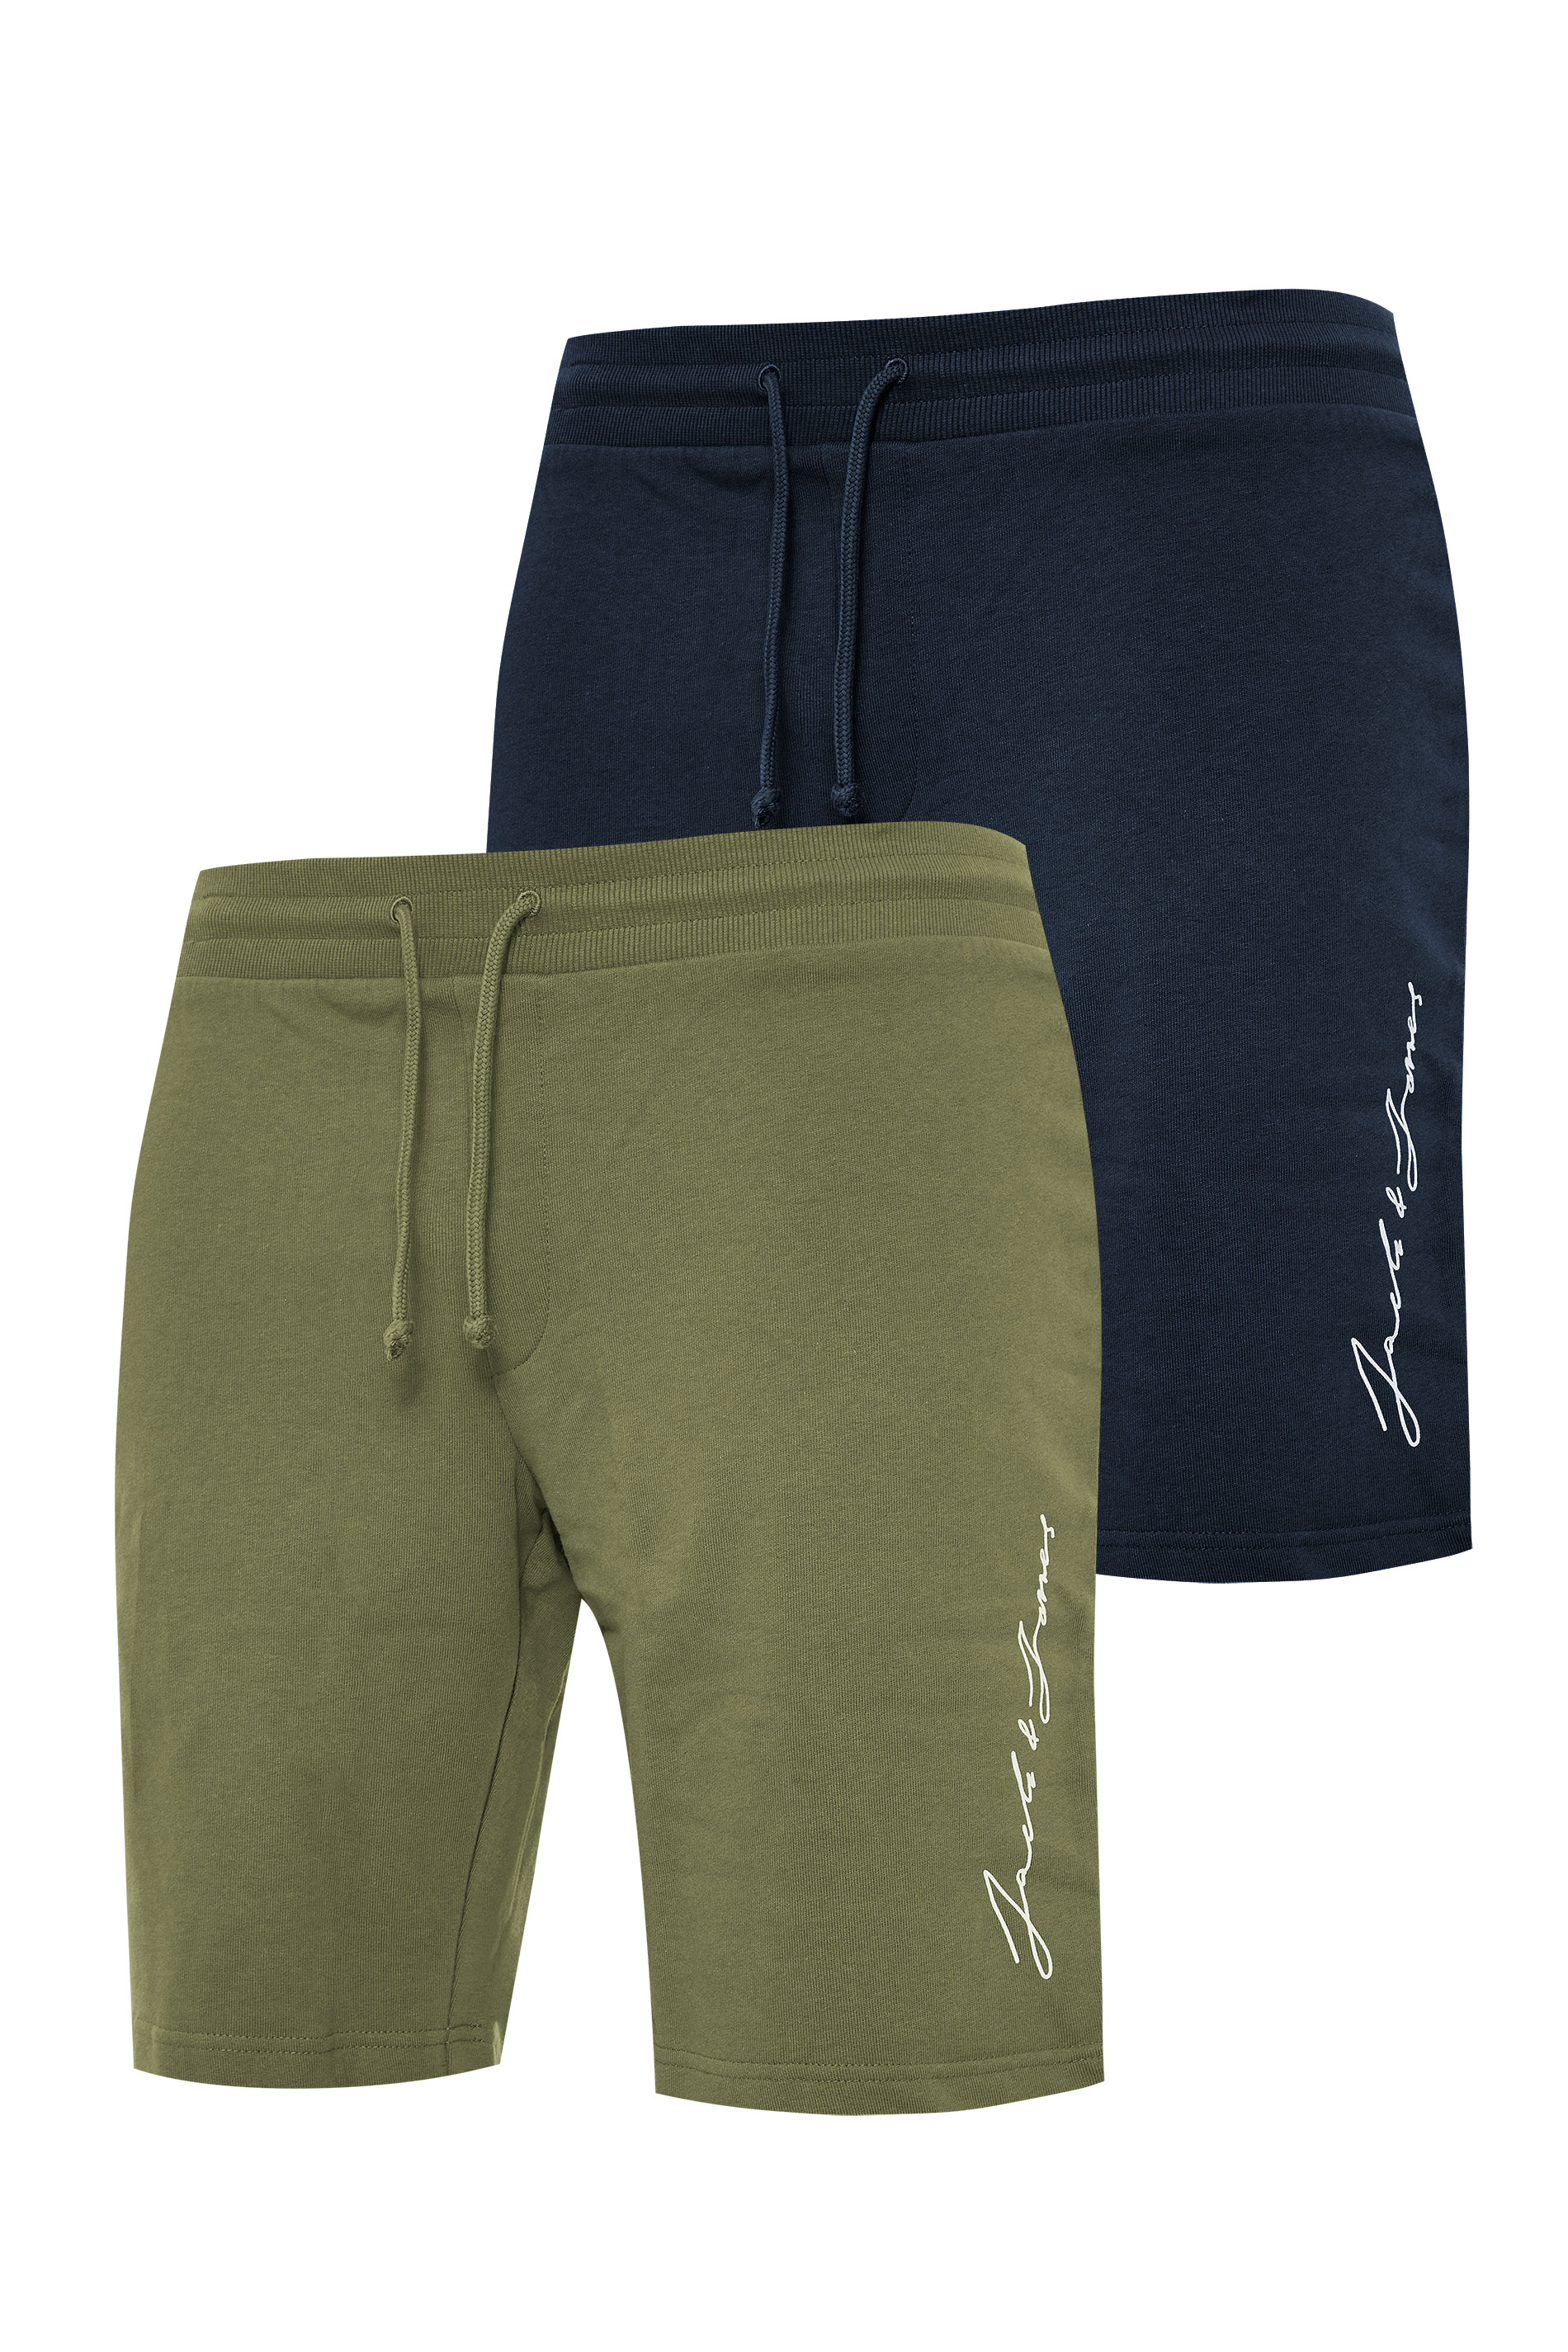 JACK & JONES Big & Tall Khaki Green 2 Pack Sweat Shorts_F.jpg